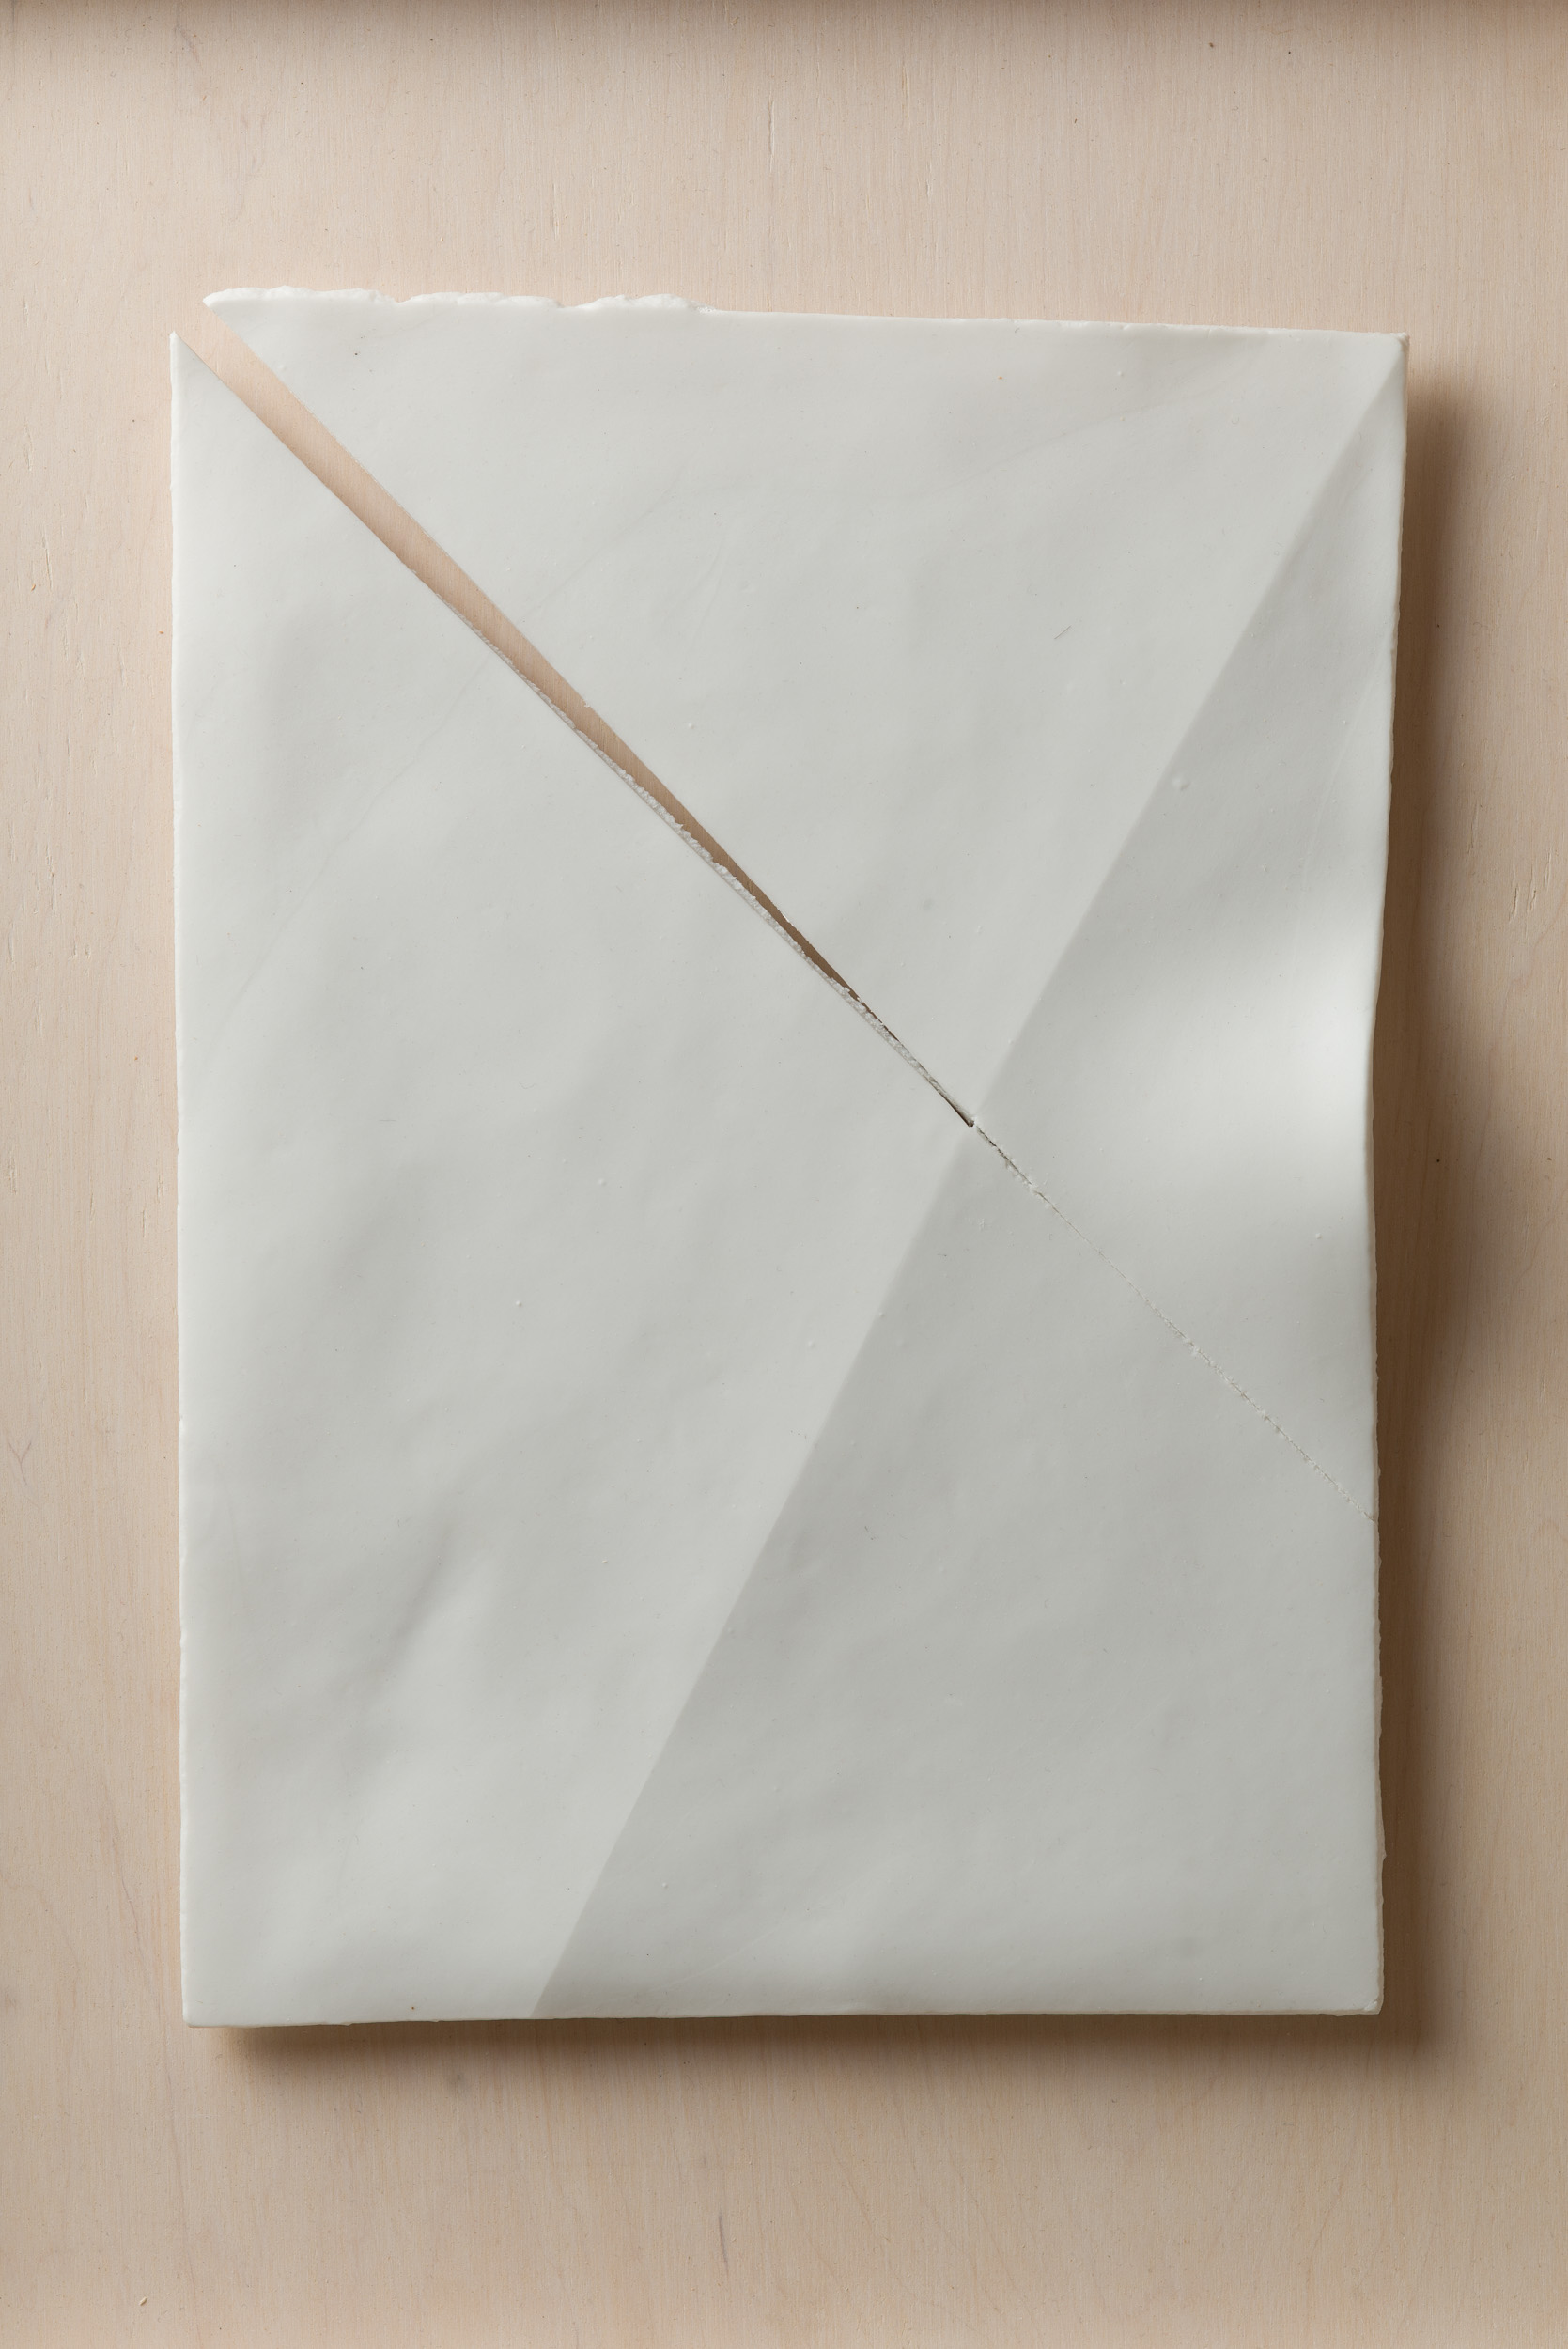 NÉMA Júlia: A4 II/IV (2019) papírporcelán / paperporcelain 18 x 26 cm (31,6 x 38,6 x 3,5 cm) fotó: Czigány Ákos